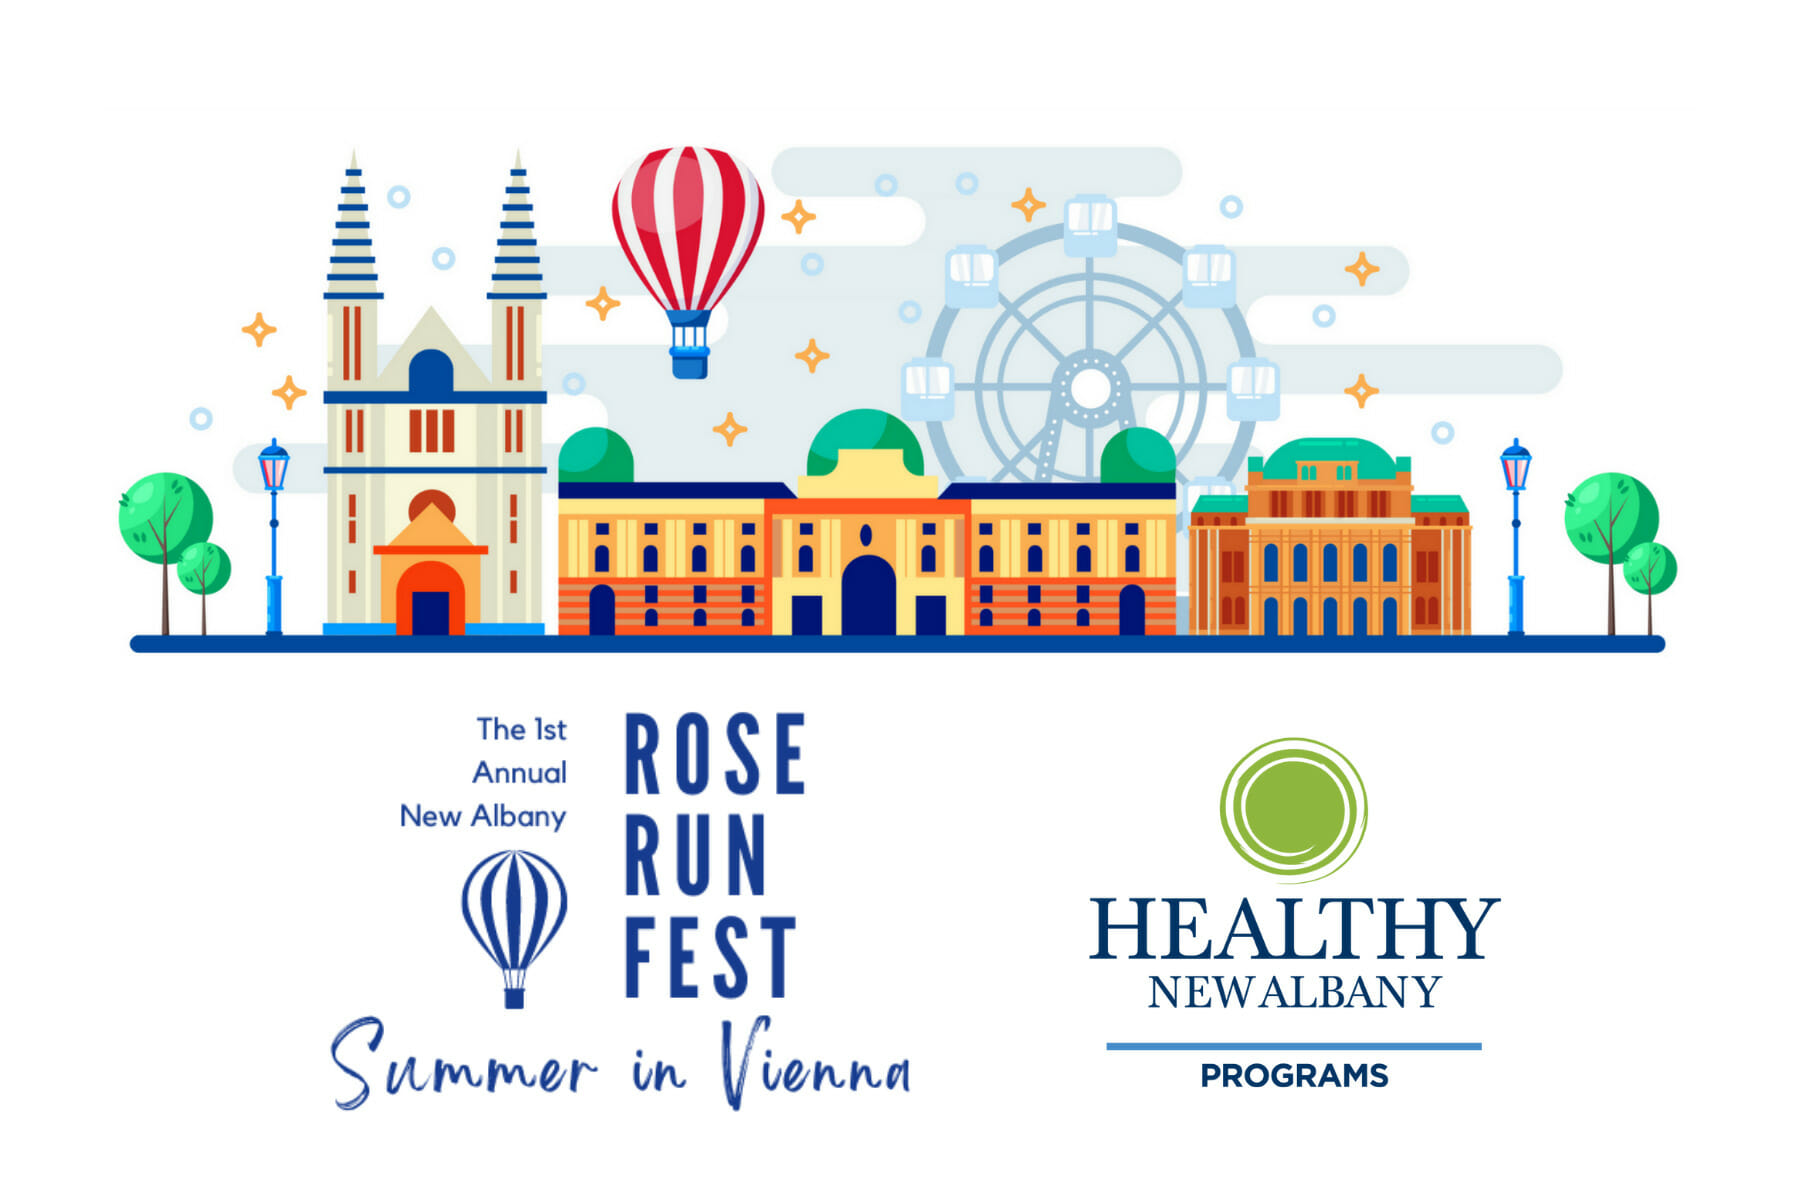 Rose Run Fest: Summer in Vienna Programs